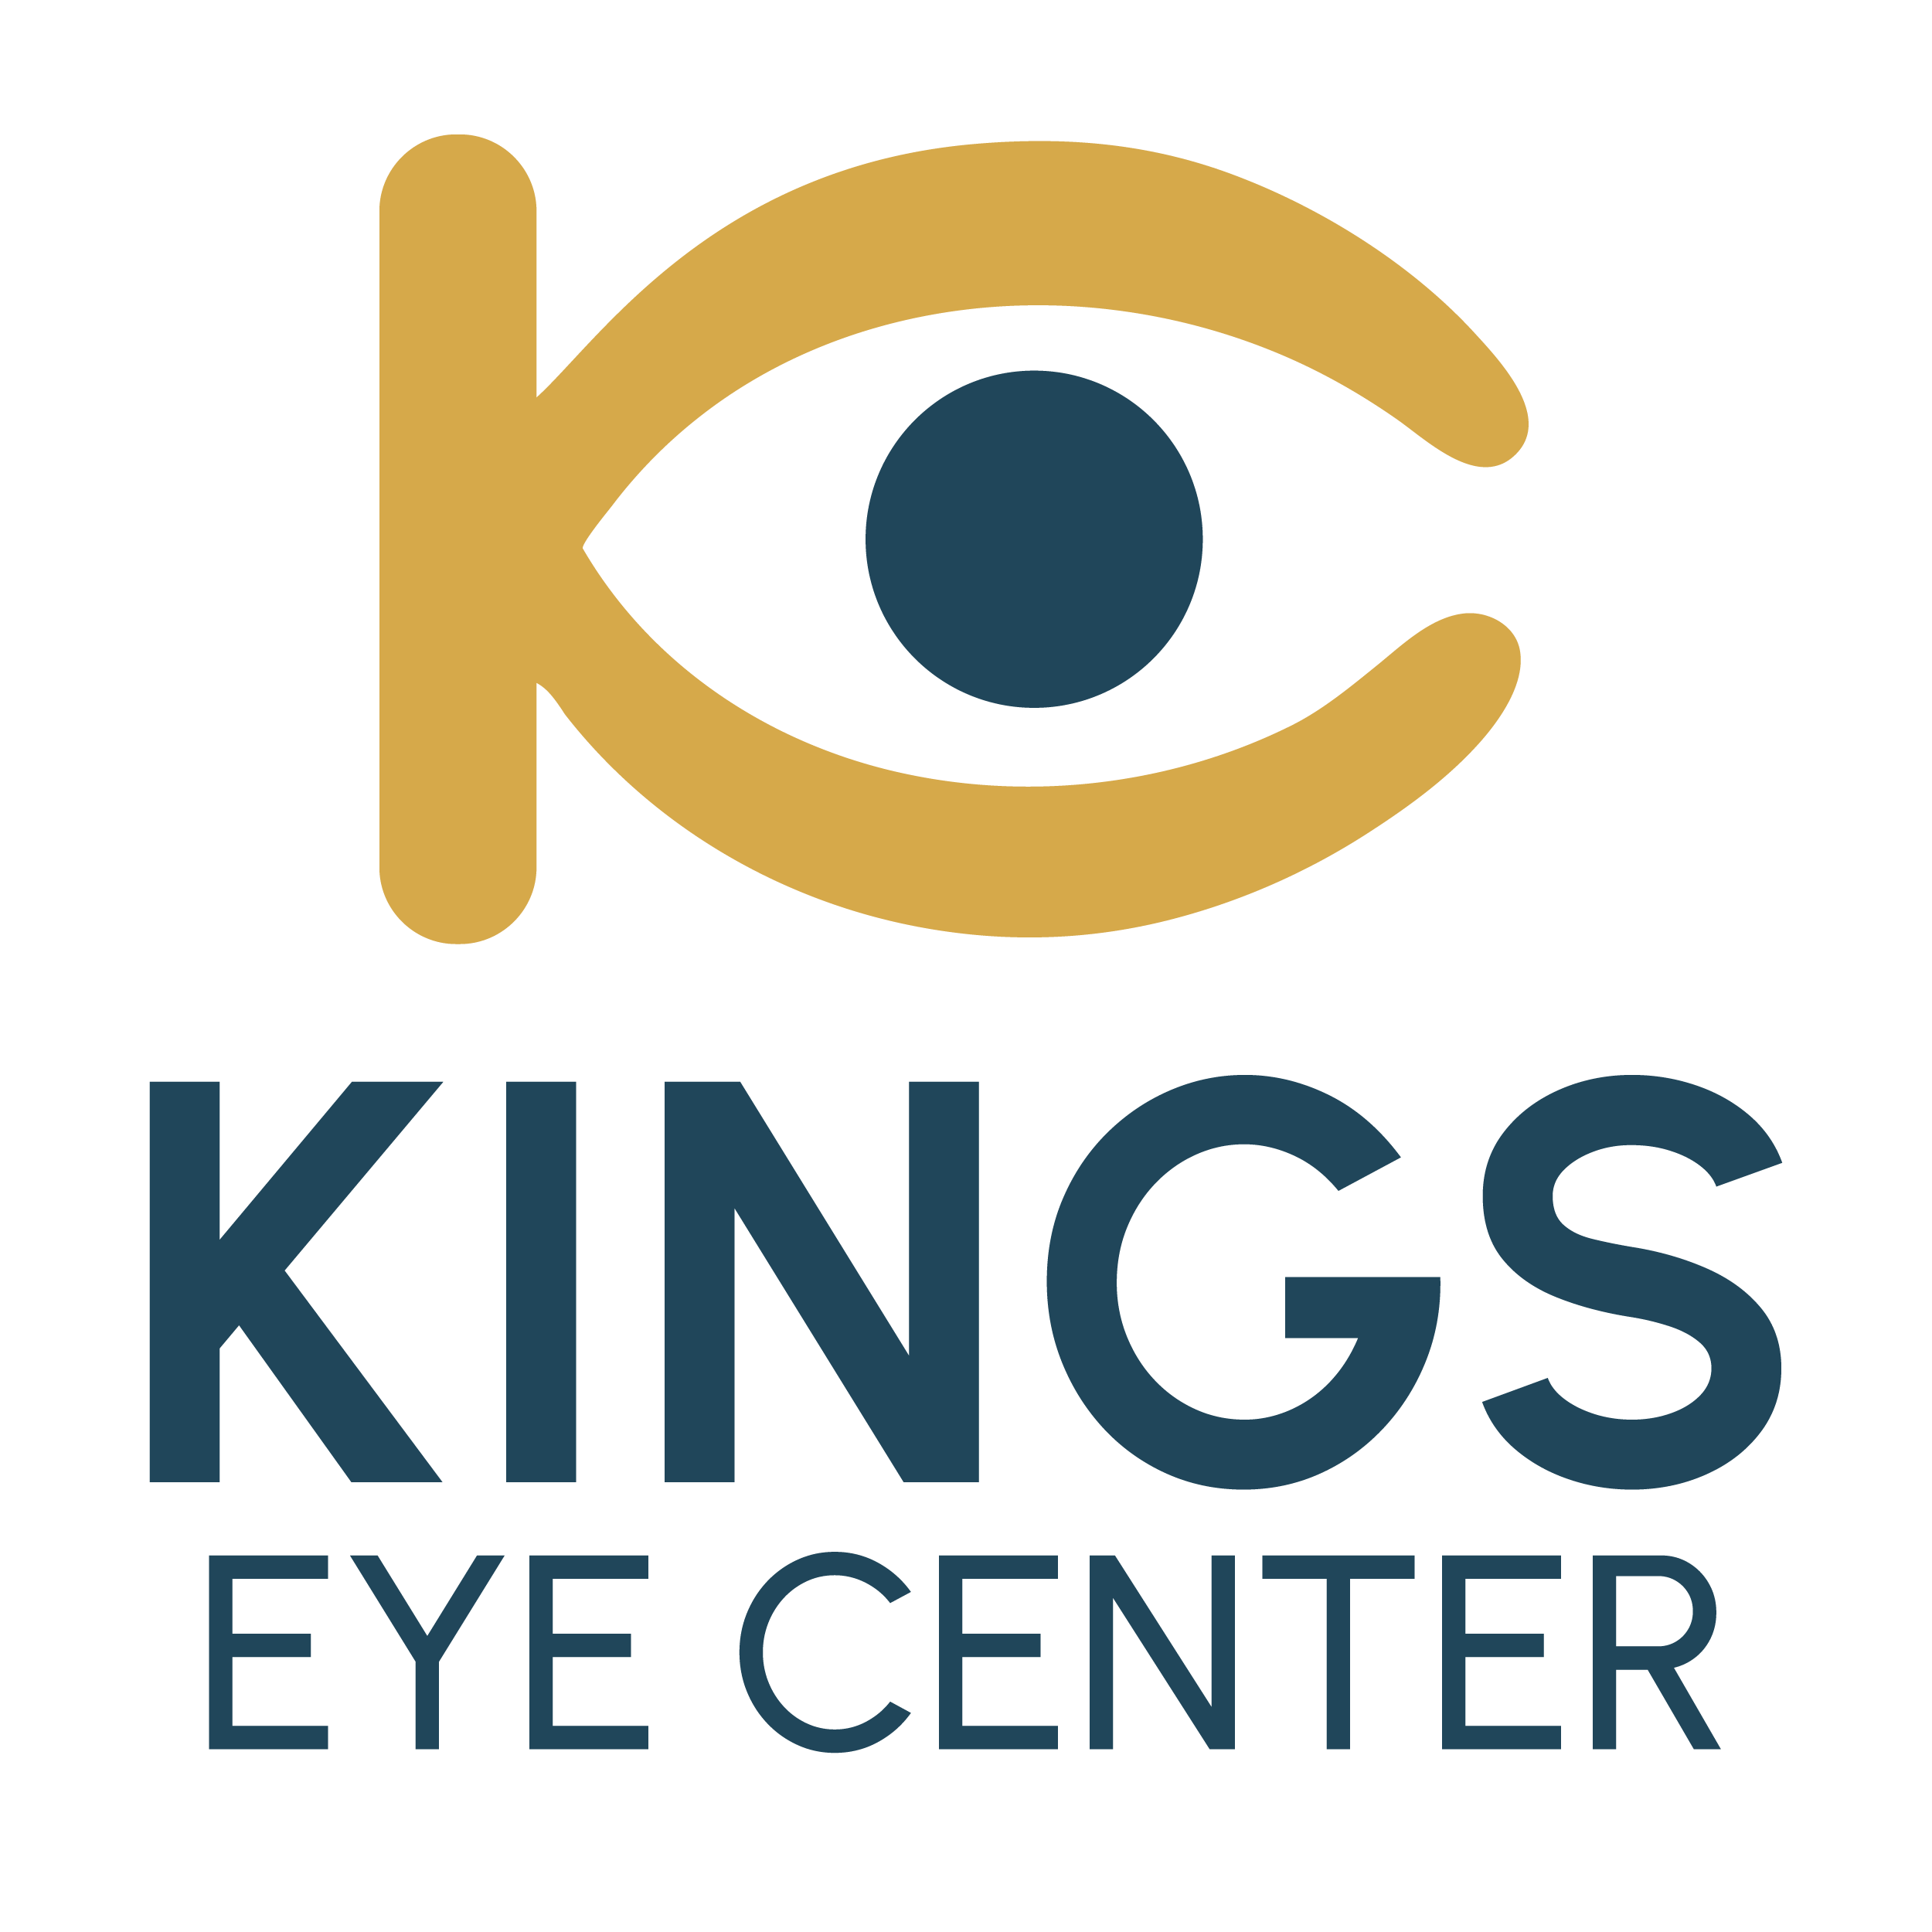 Kings Eye Center